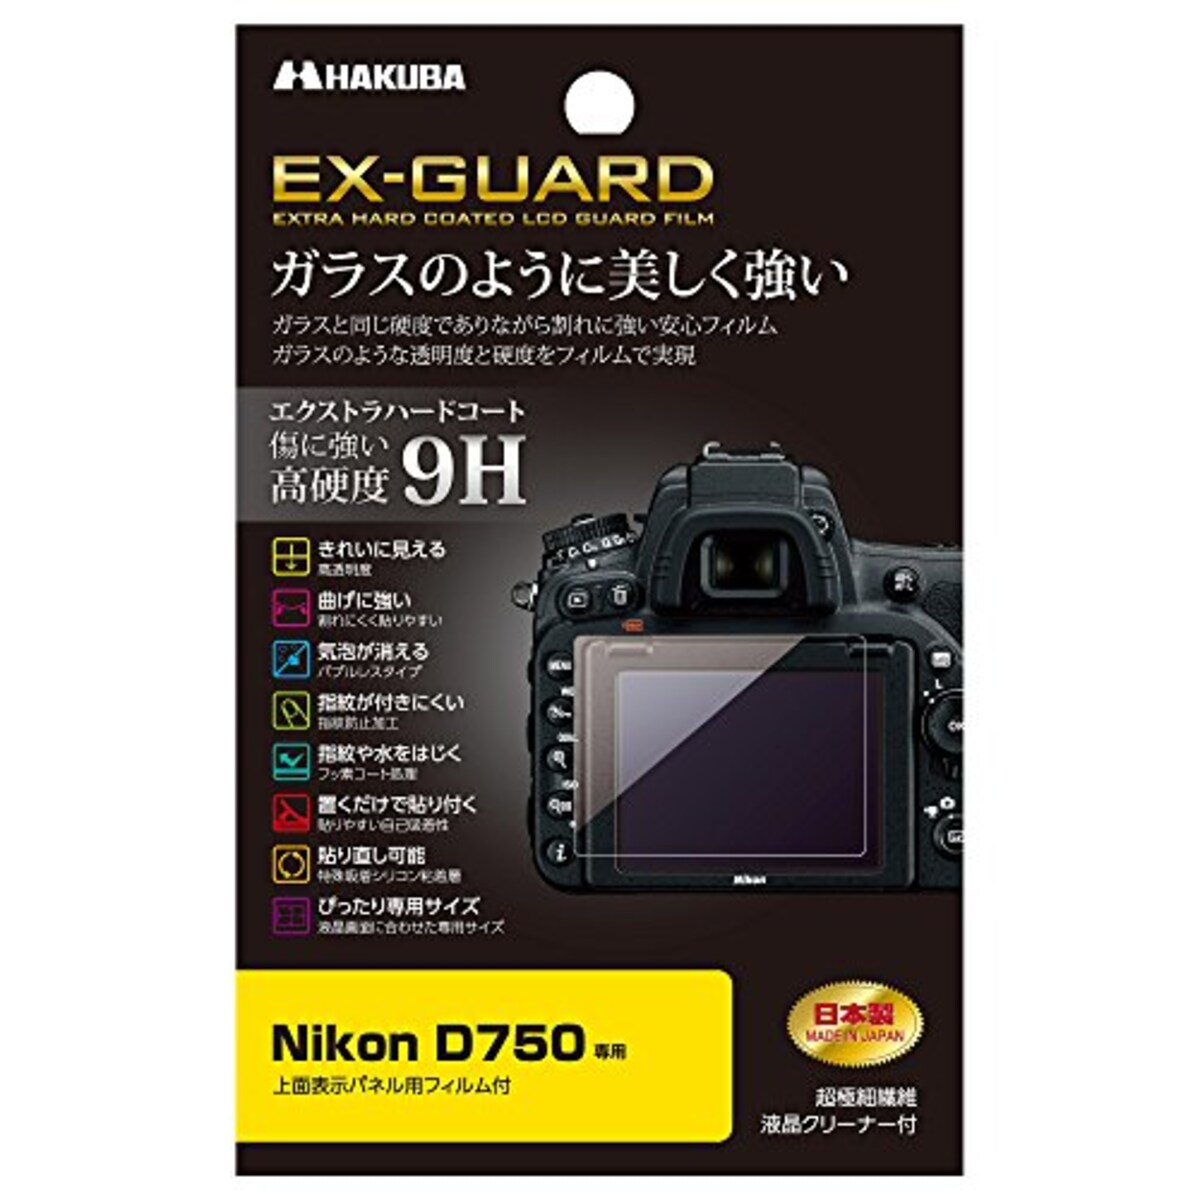 デジタルカメラ液晶保護フィルム EX-GUARD Nikon D750専用 